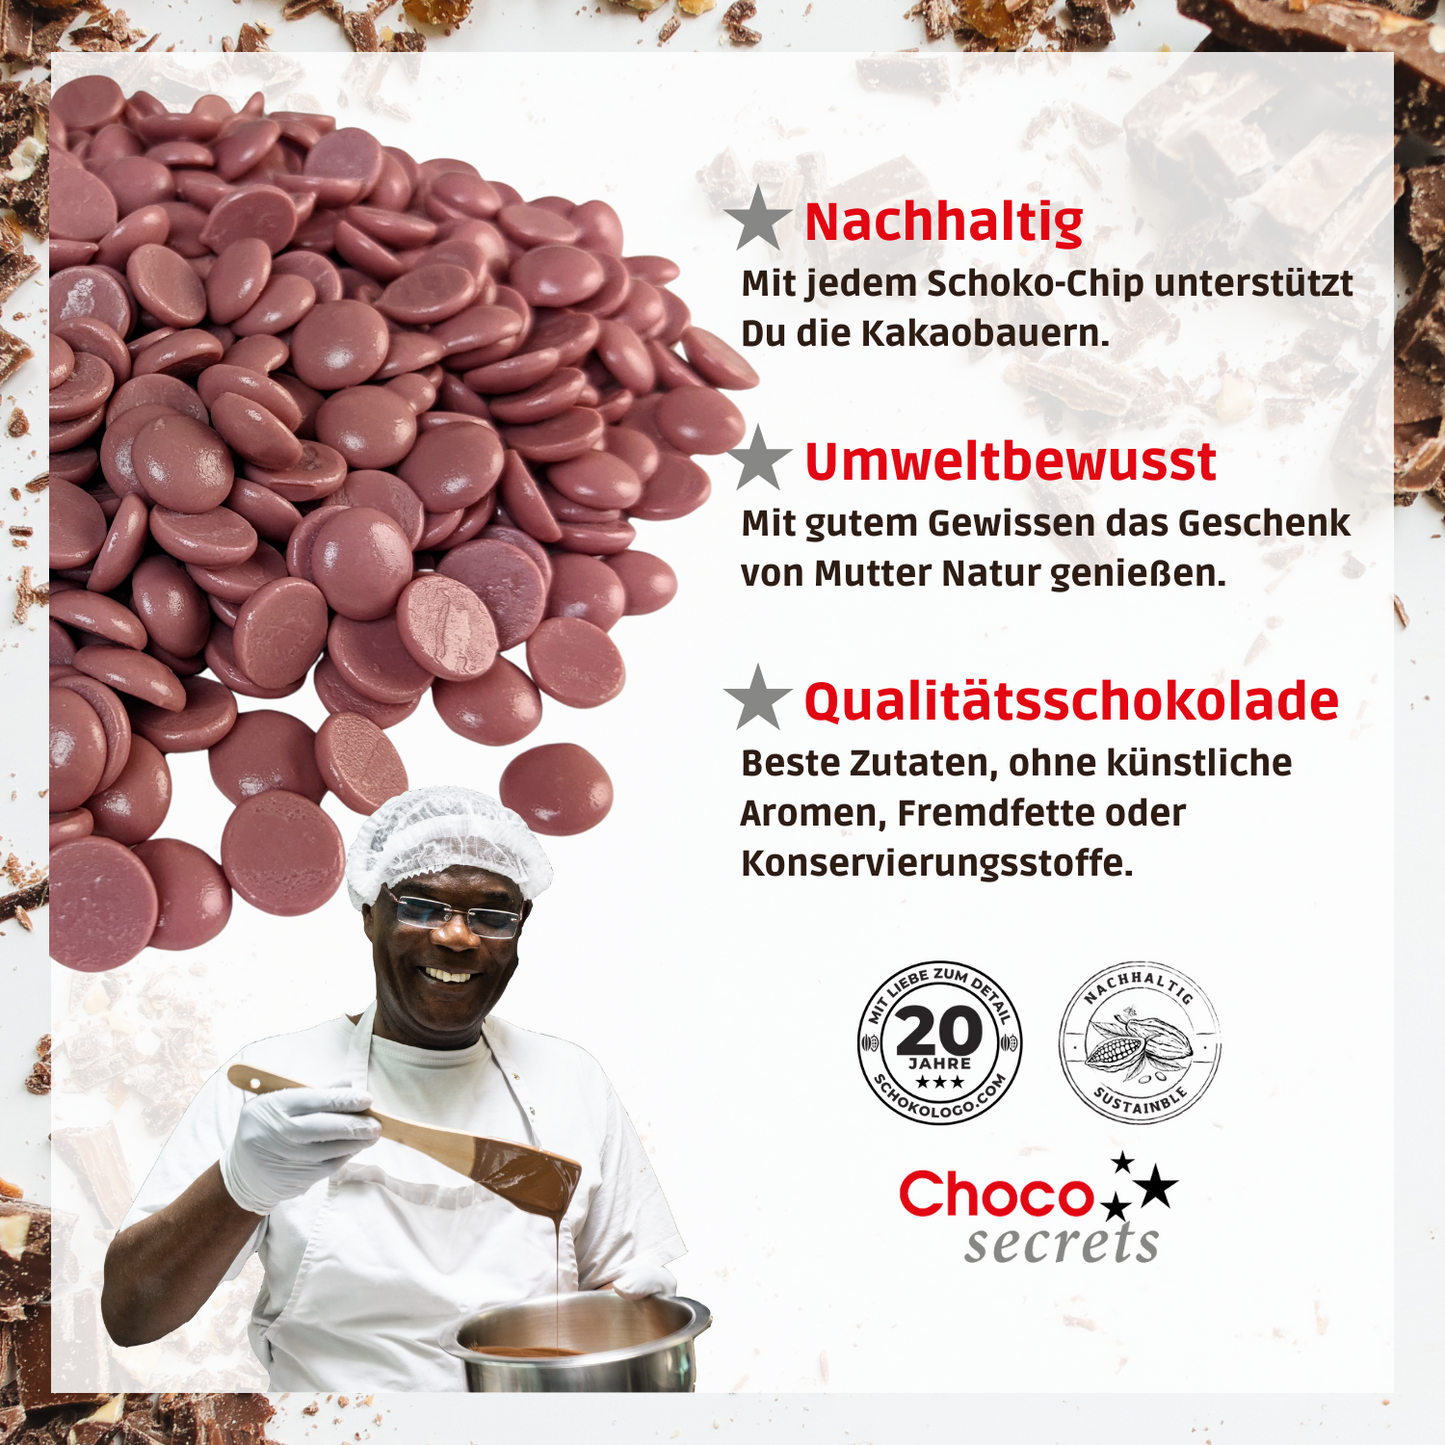 Callebaut Ruby 47.3% feinste belgische Schokoladenkuvertüre, 1 kg, im wiederverschließbaren Beutel